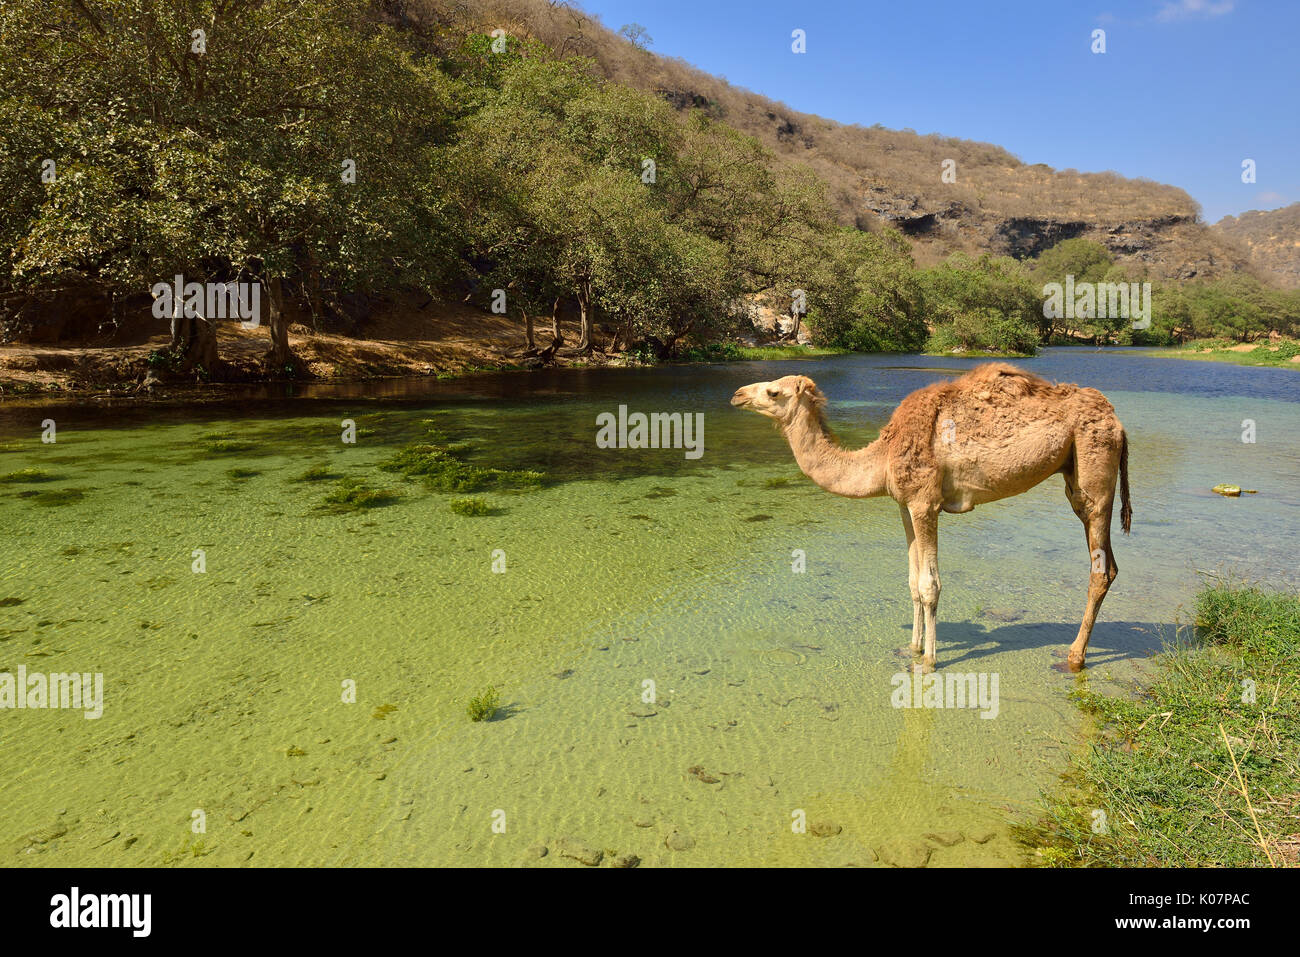 Arabian camel (Camelus dromedarius), standing in a river at Wadi Darbat, Dhofar, Oman, Arabia Stock Photo